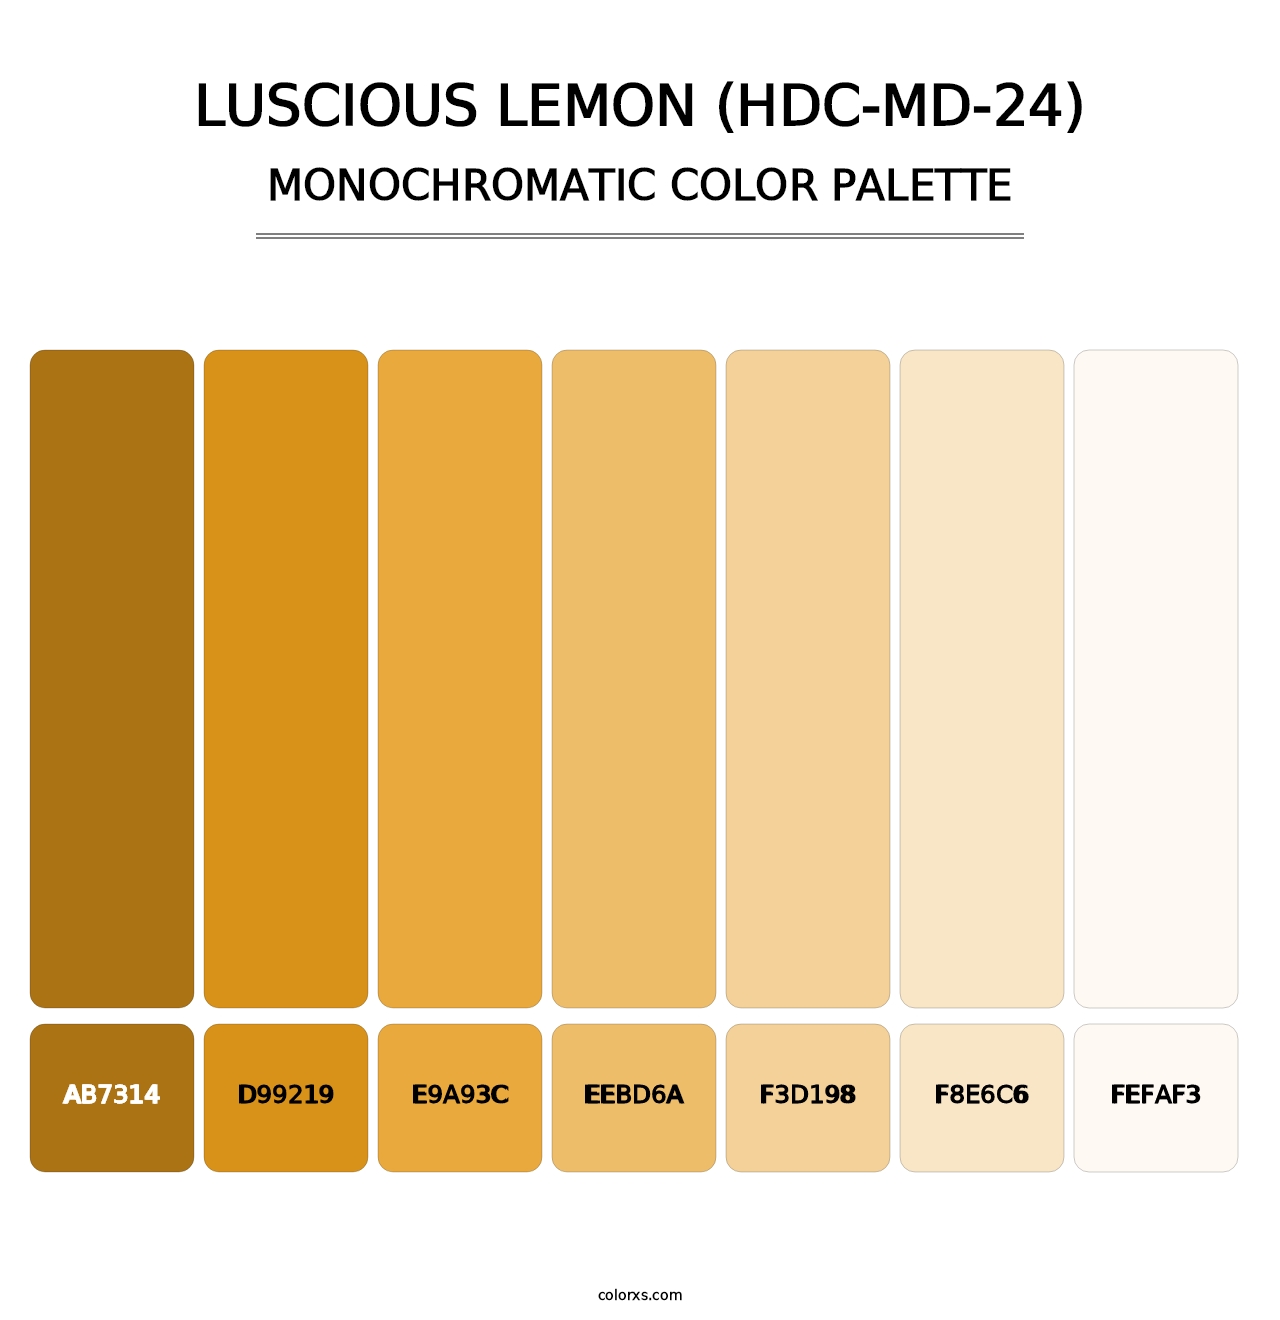 Luscious Lemon (HDC-MD-24) - Monochromatic Color Palette